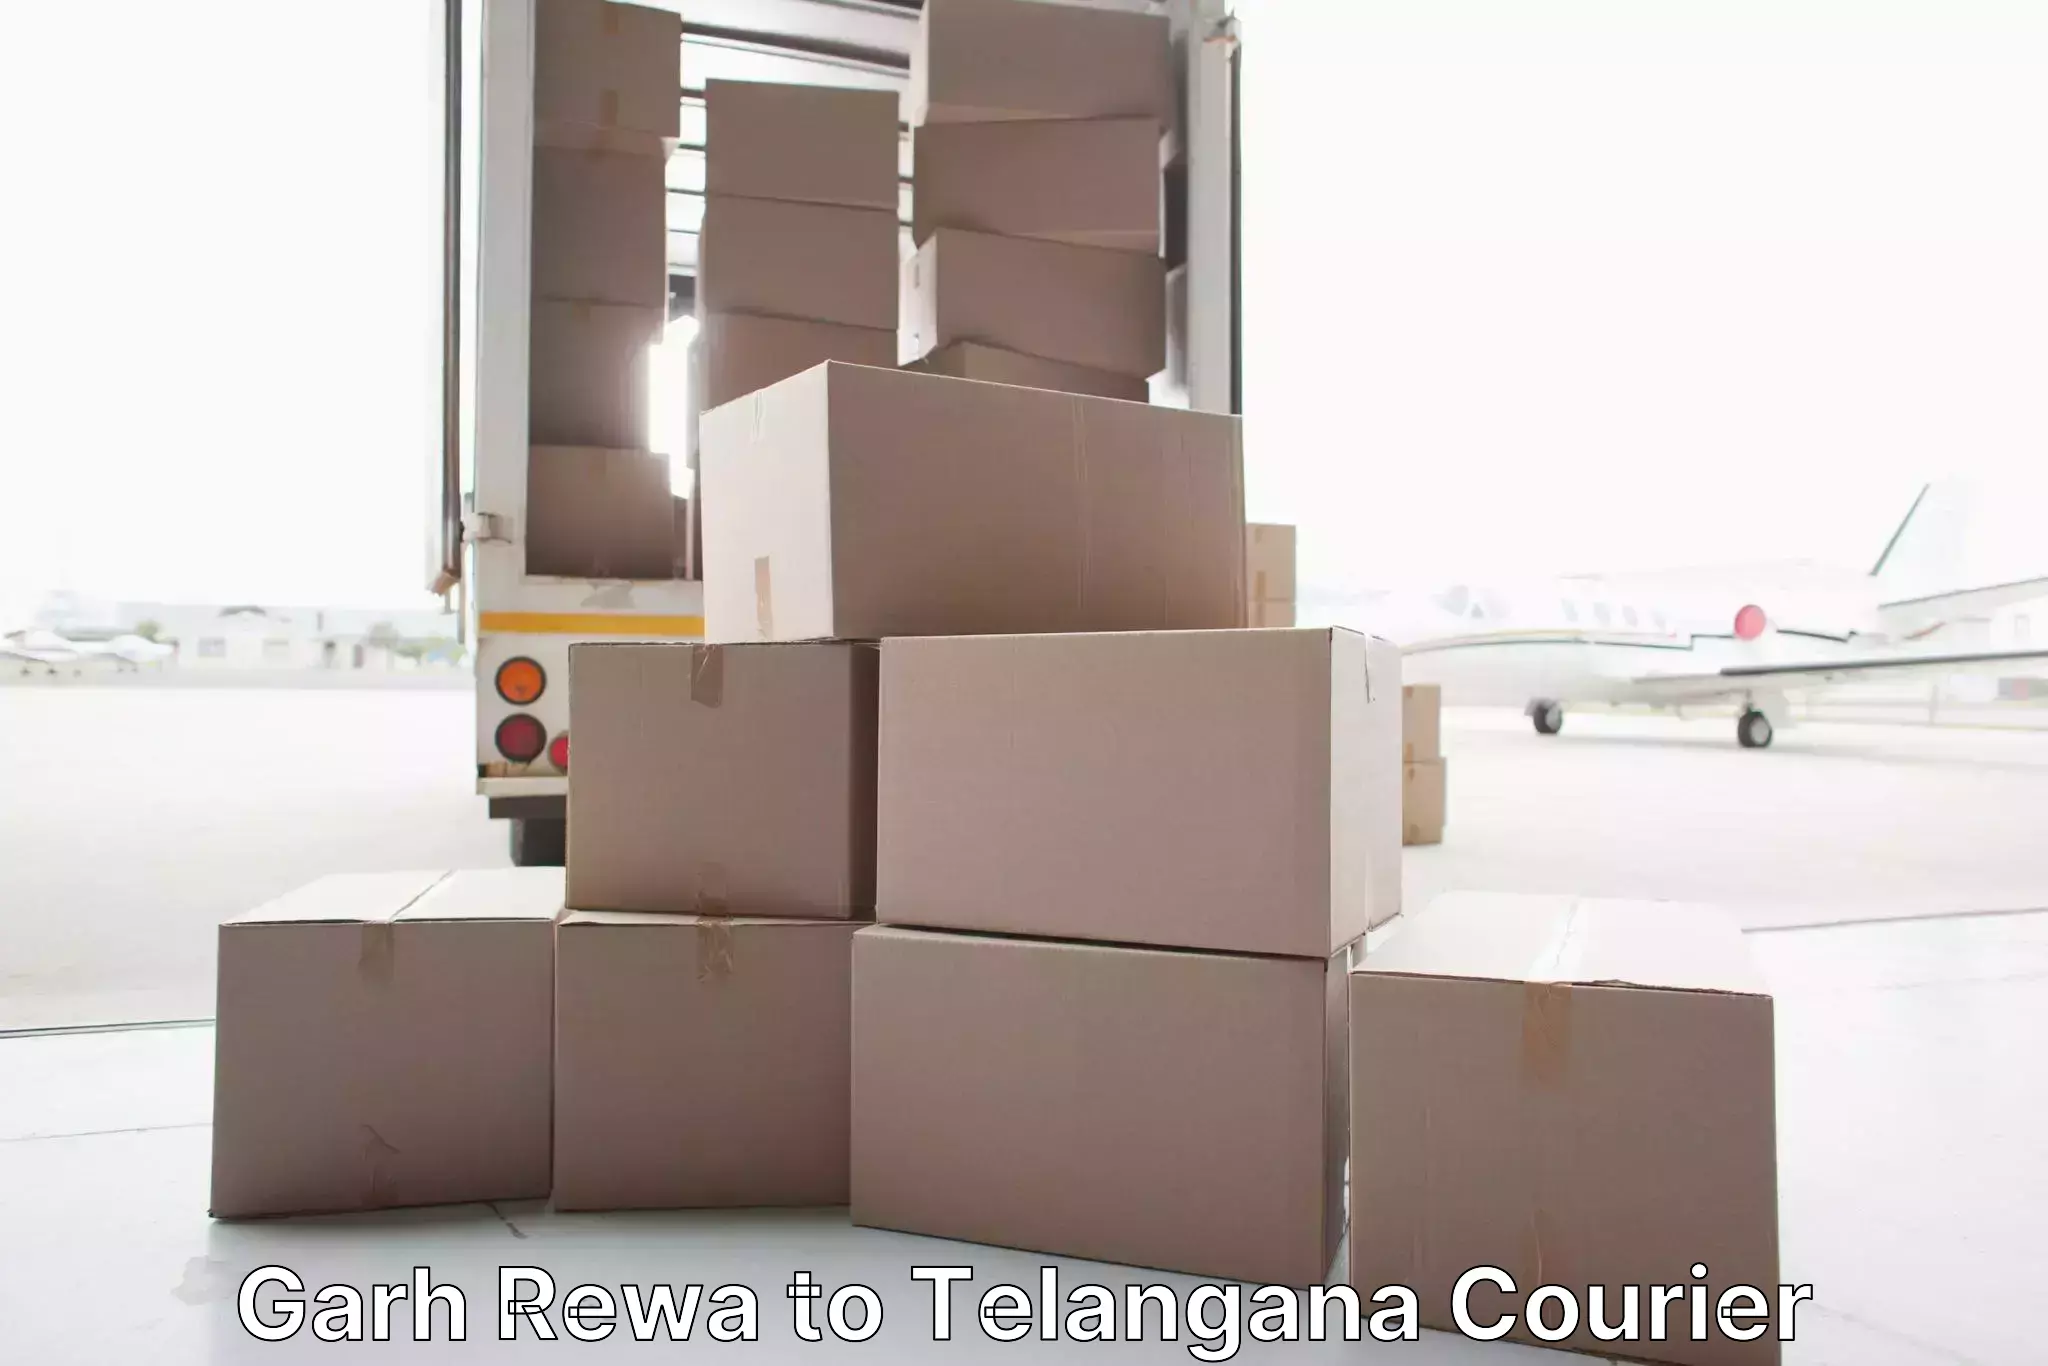 Furniture transport experts Garh Rewa to Telangana